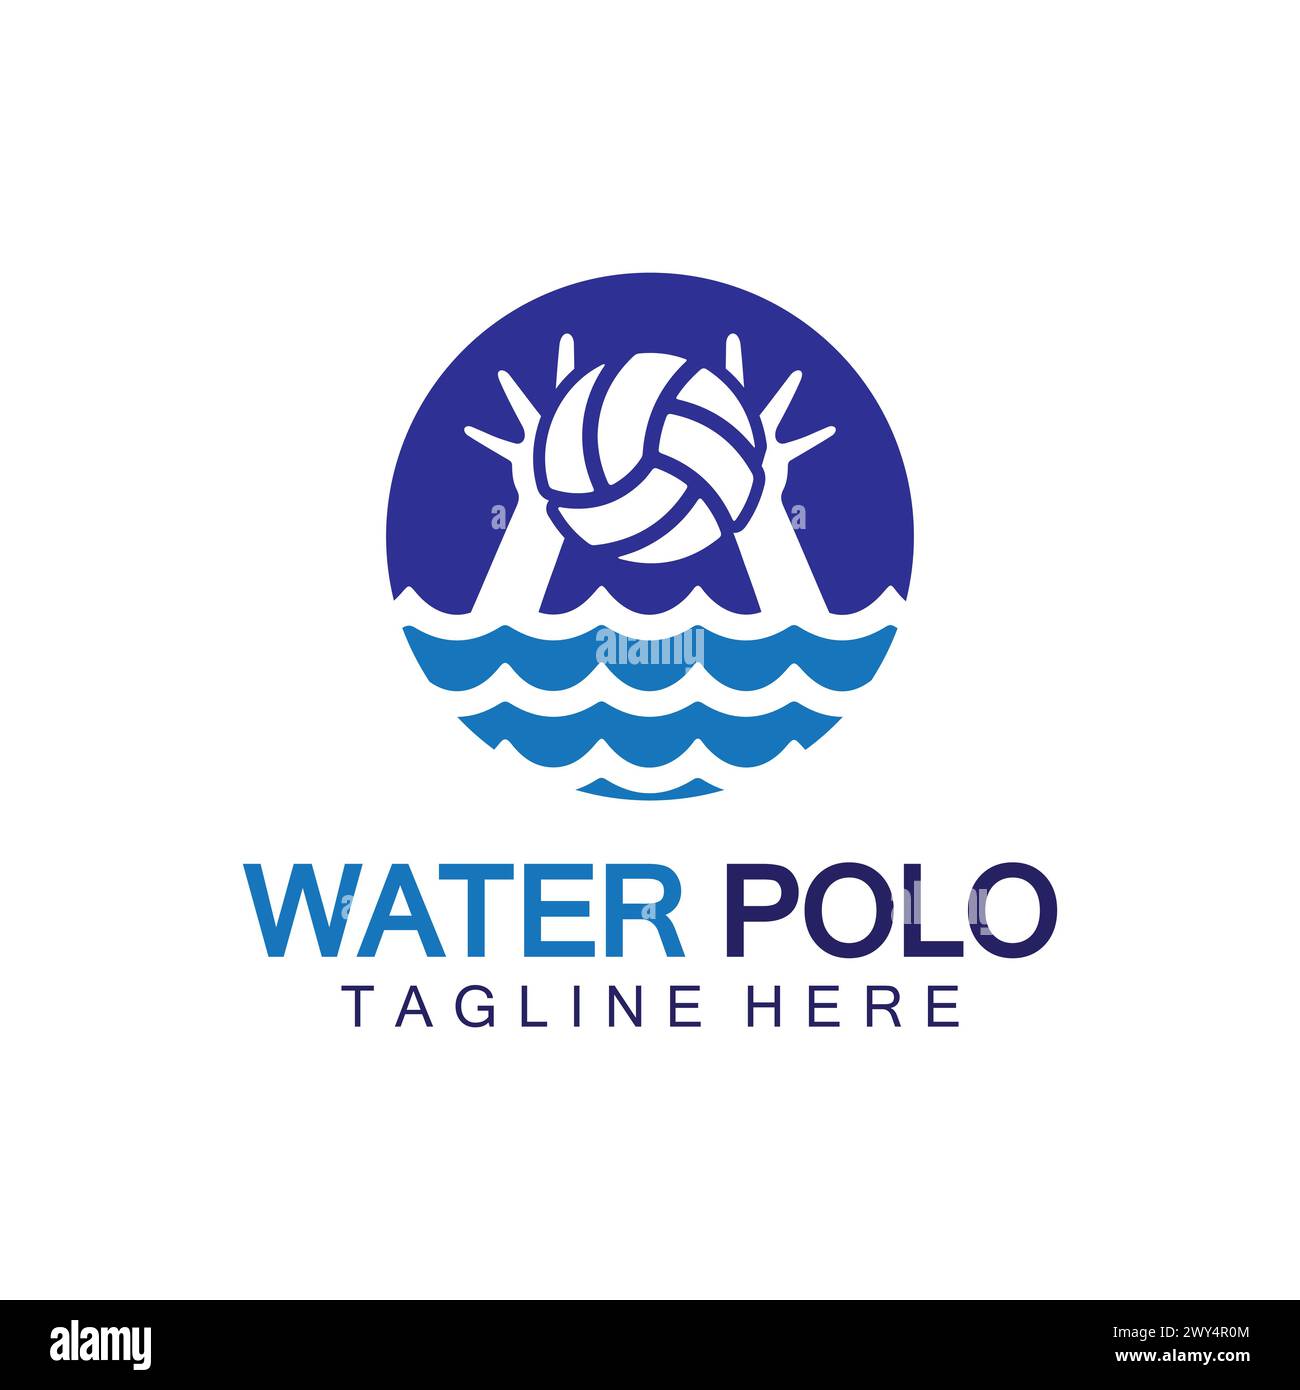 Water polo logo vector icon design. logo sport water polo Stock Vector